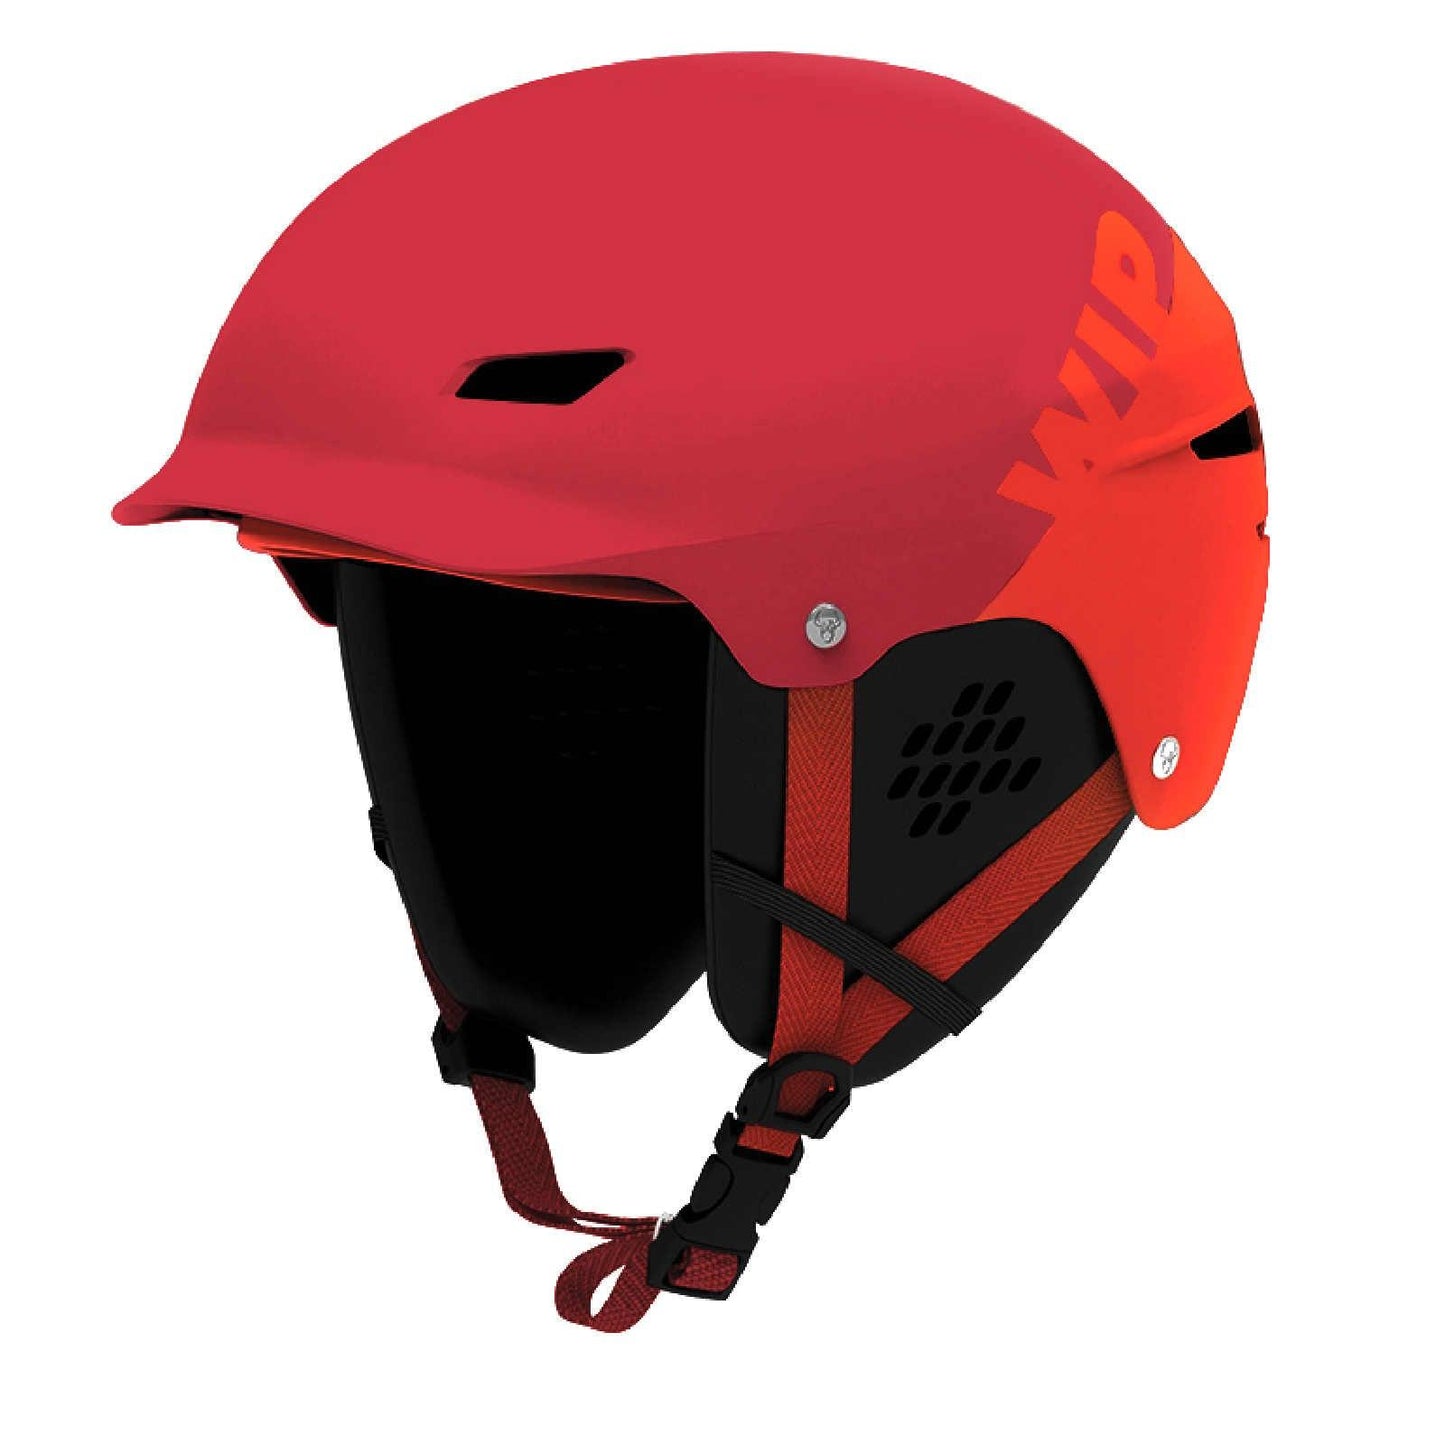 Forward WIP Wipper Helmet - Poole Harbour Watersports